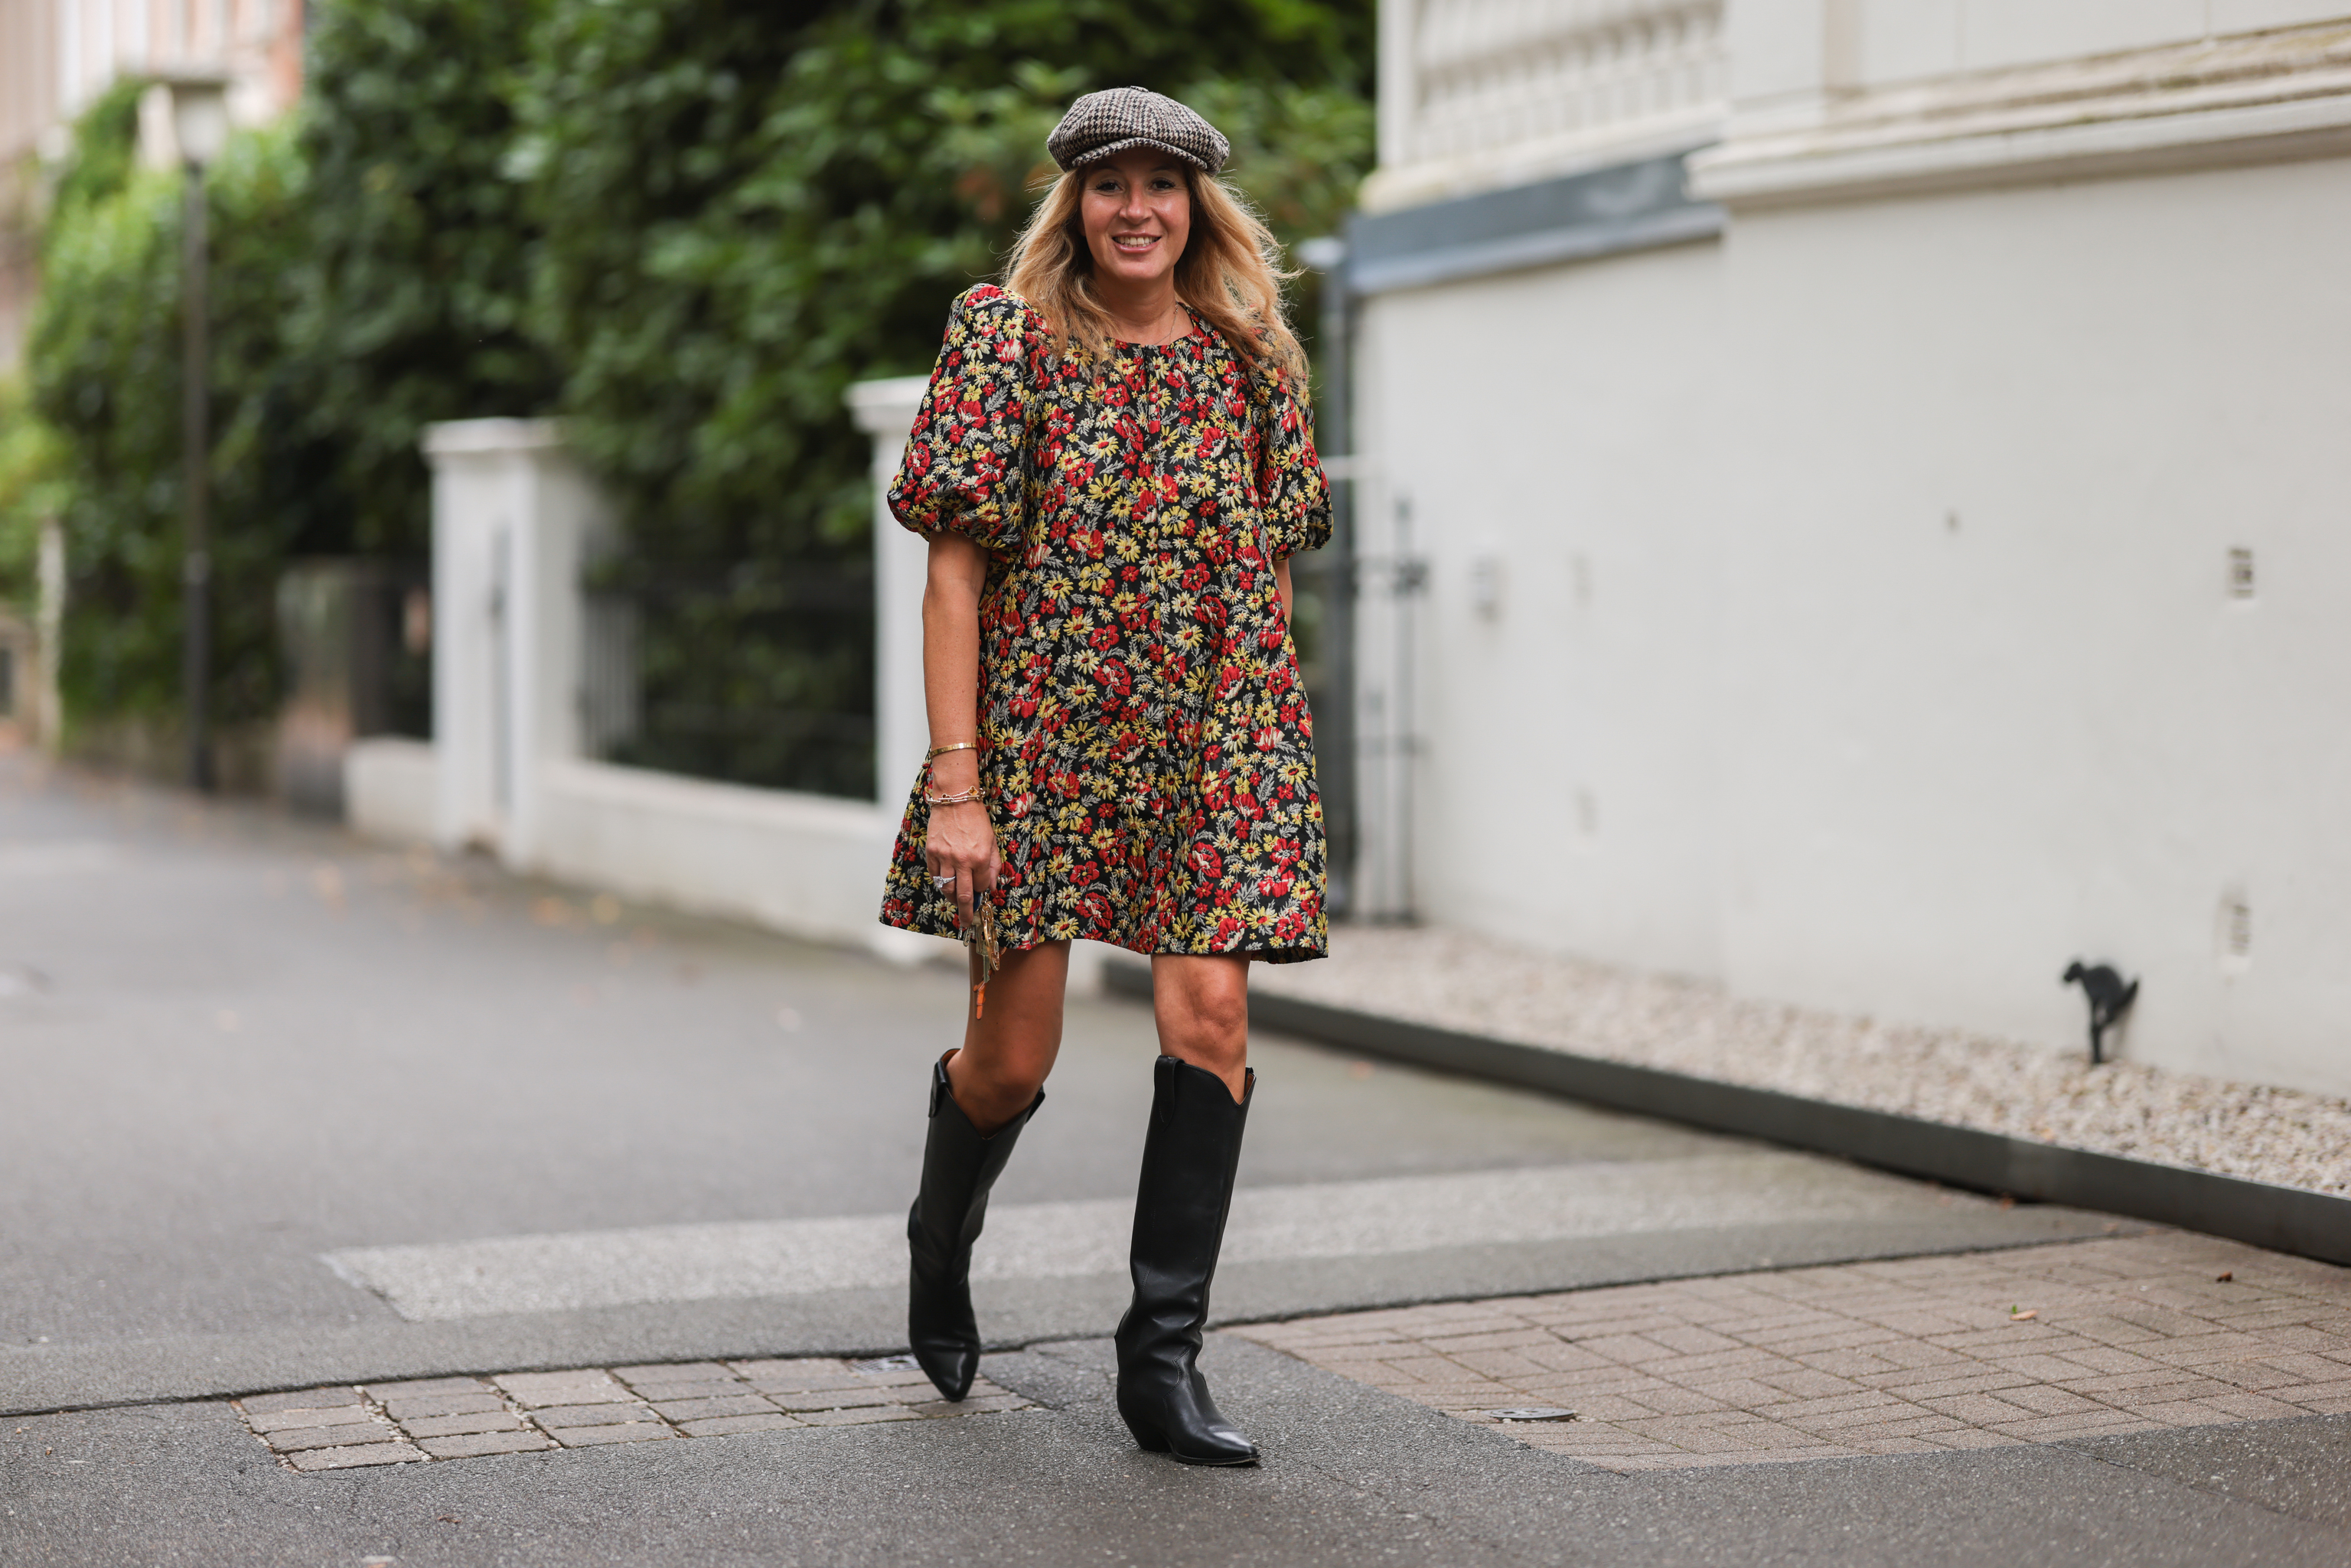 Botas cowboy baratas de Zara y Mango Outlet para seguir las tendencias de  la temporada | Moda